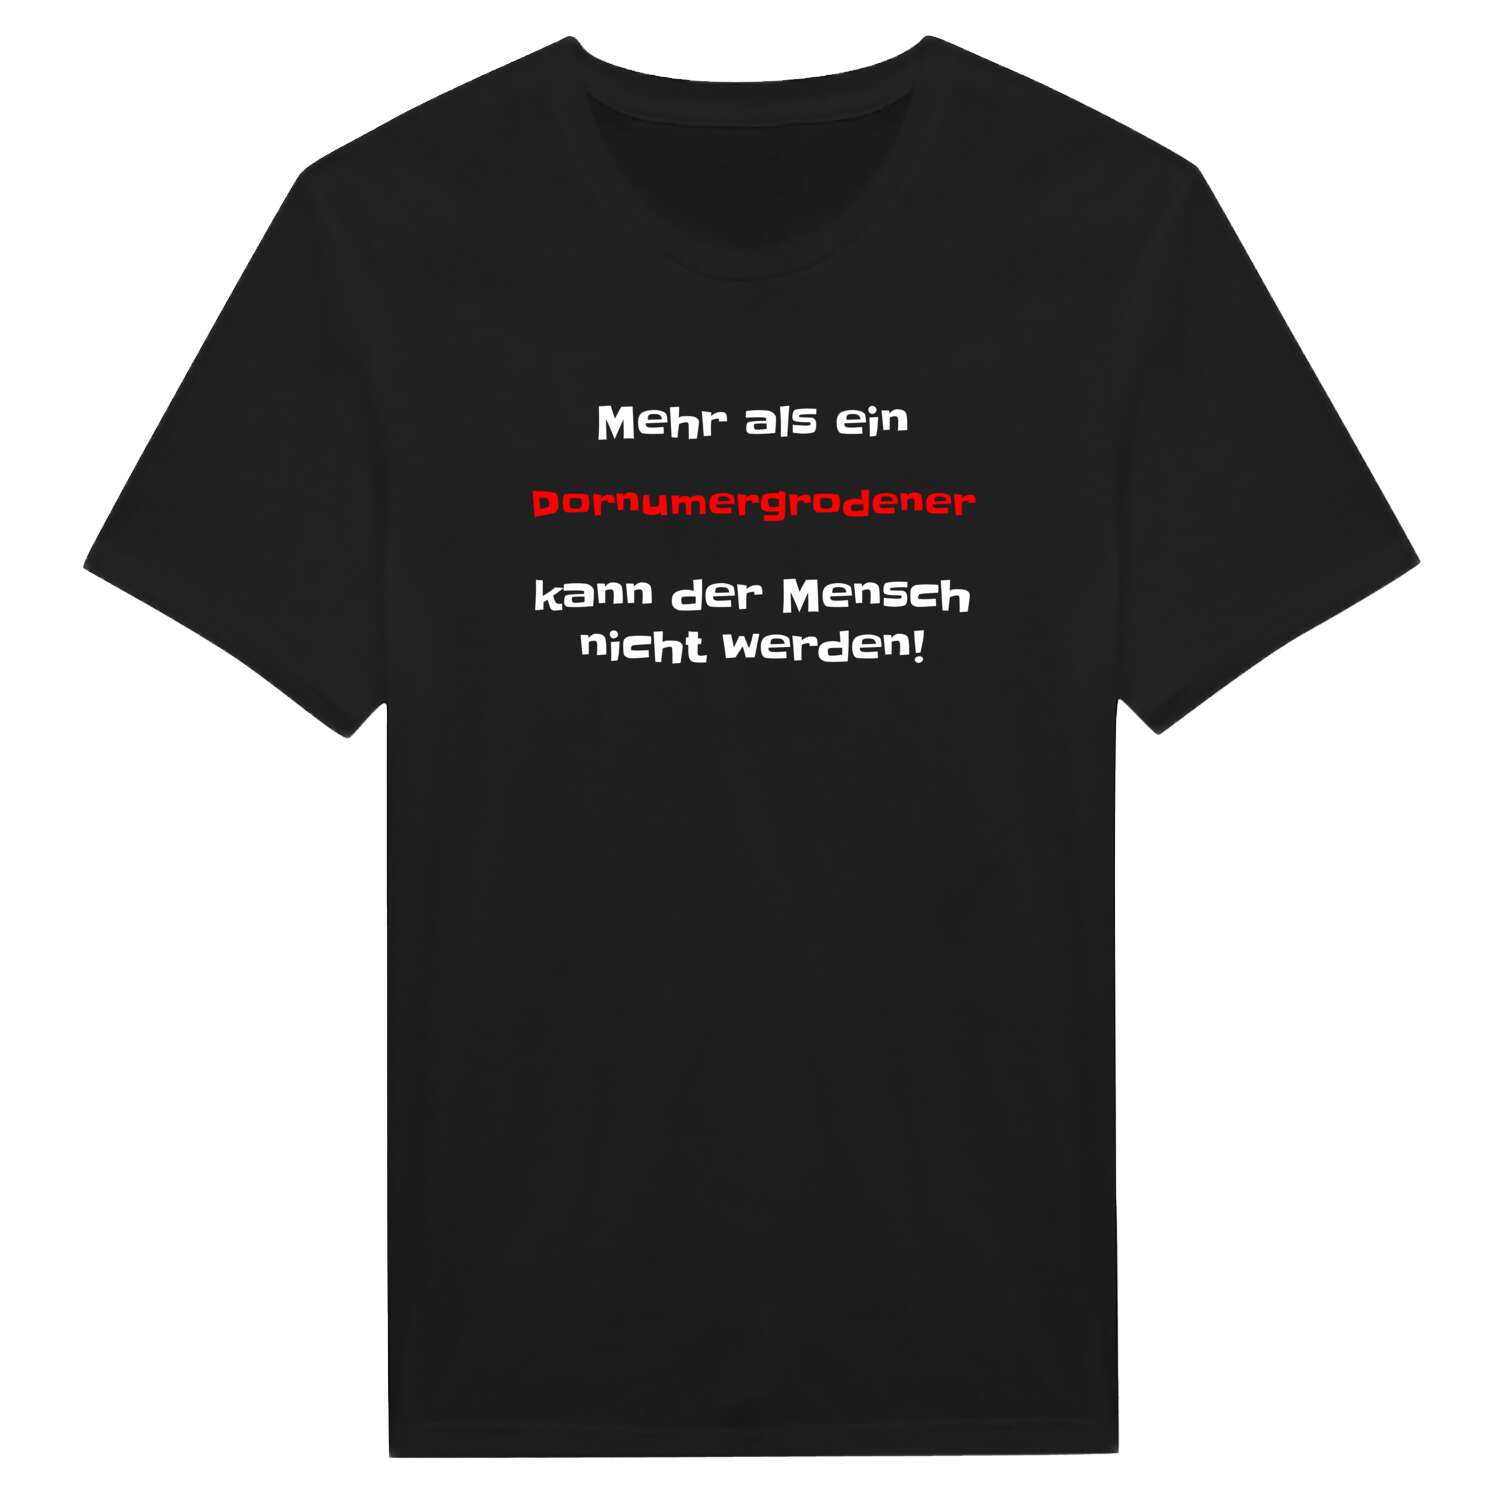 Dornumergrode T-Shirt »Mehr als ein«